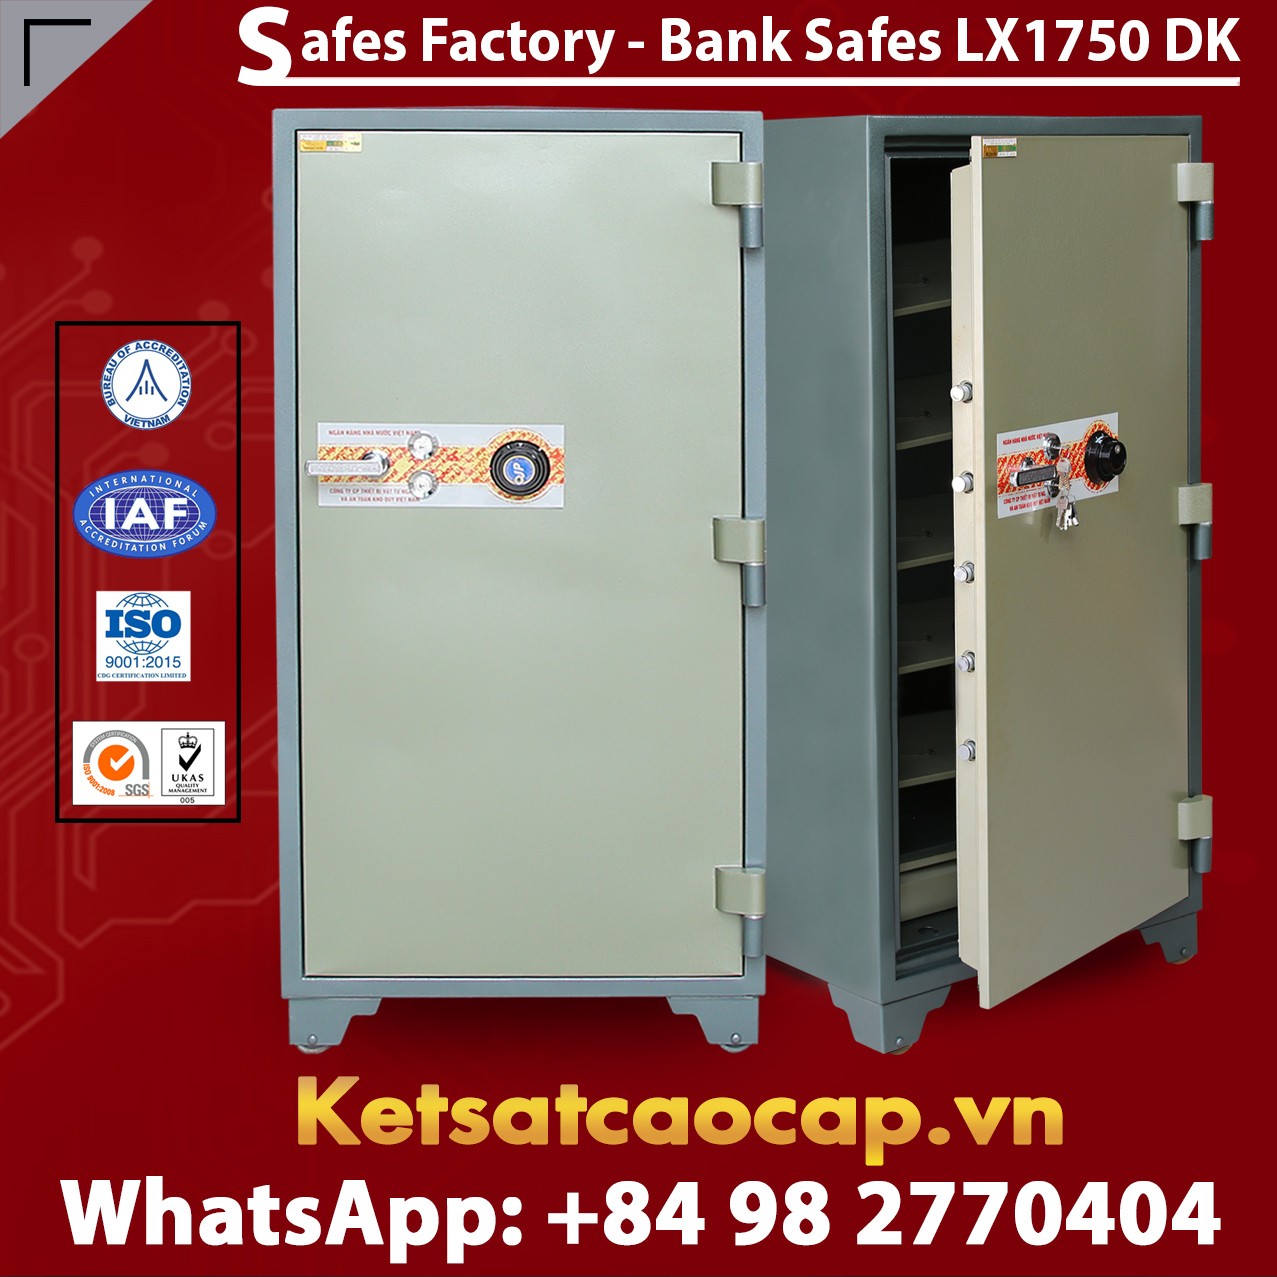 Bank Safe LX1750 DK Custom Bank Safes Fireproof Safe Security Safe Box